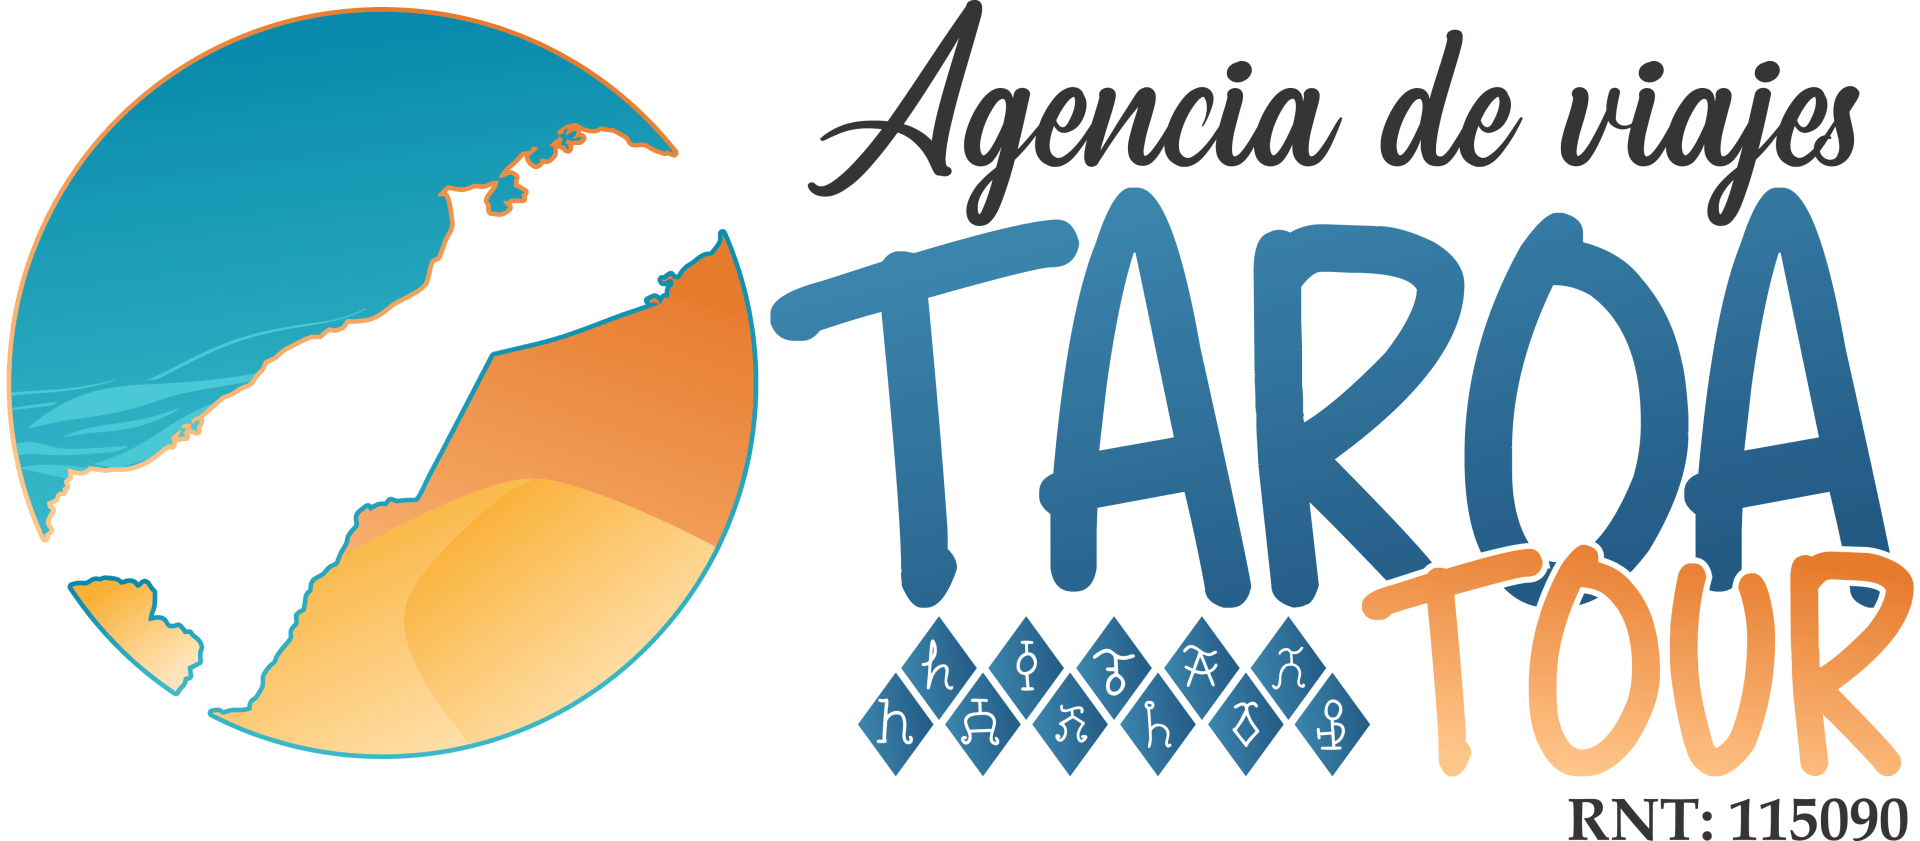 Taroa Tours